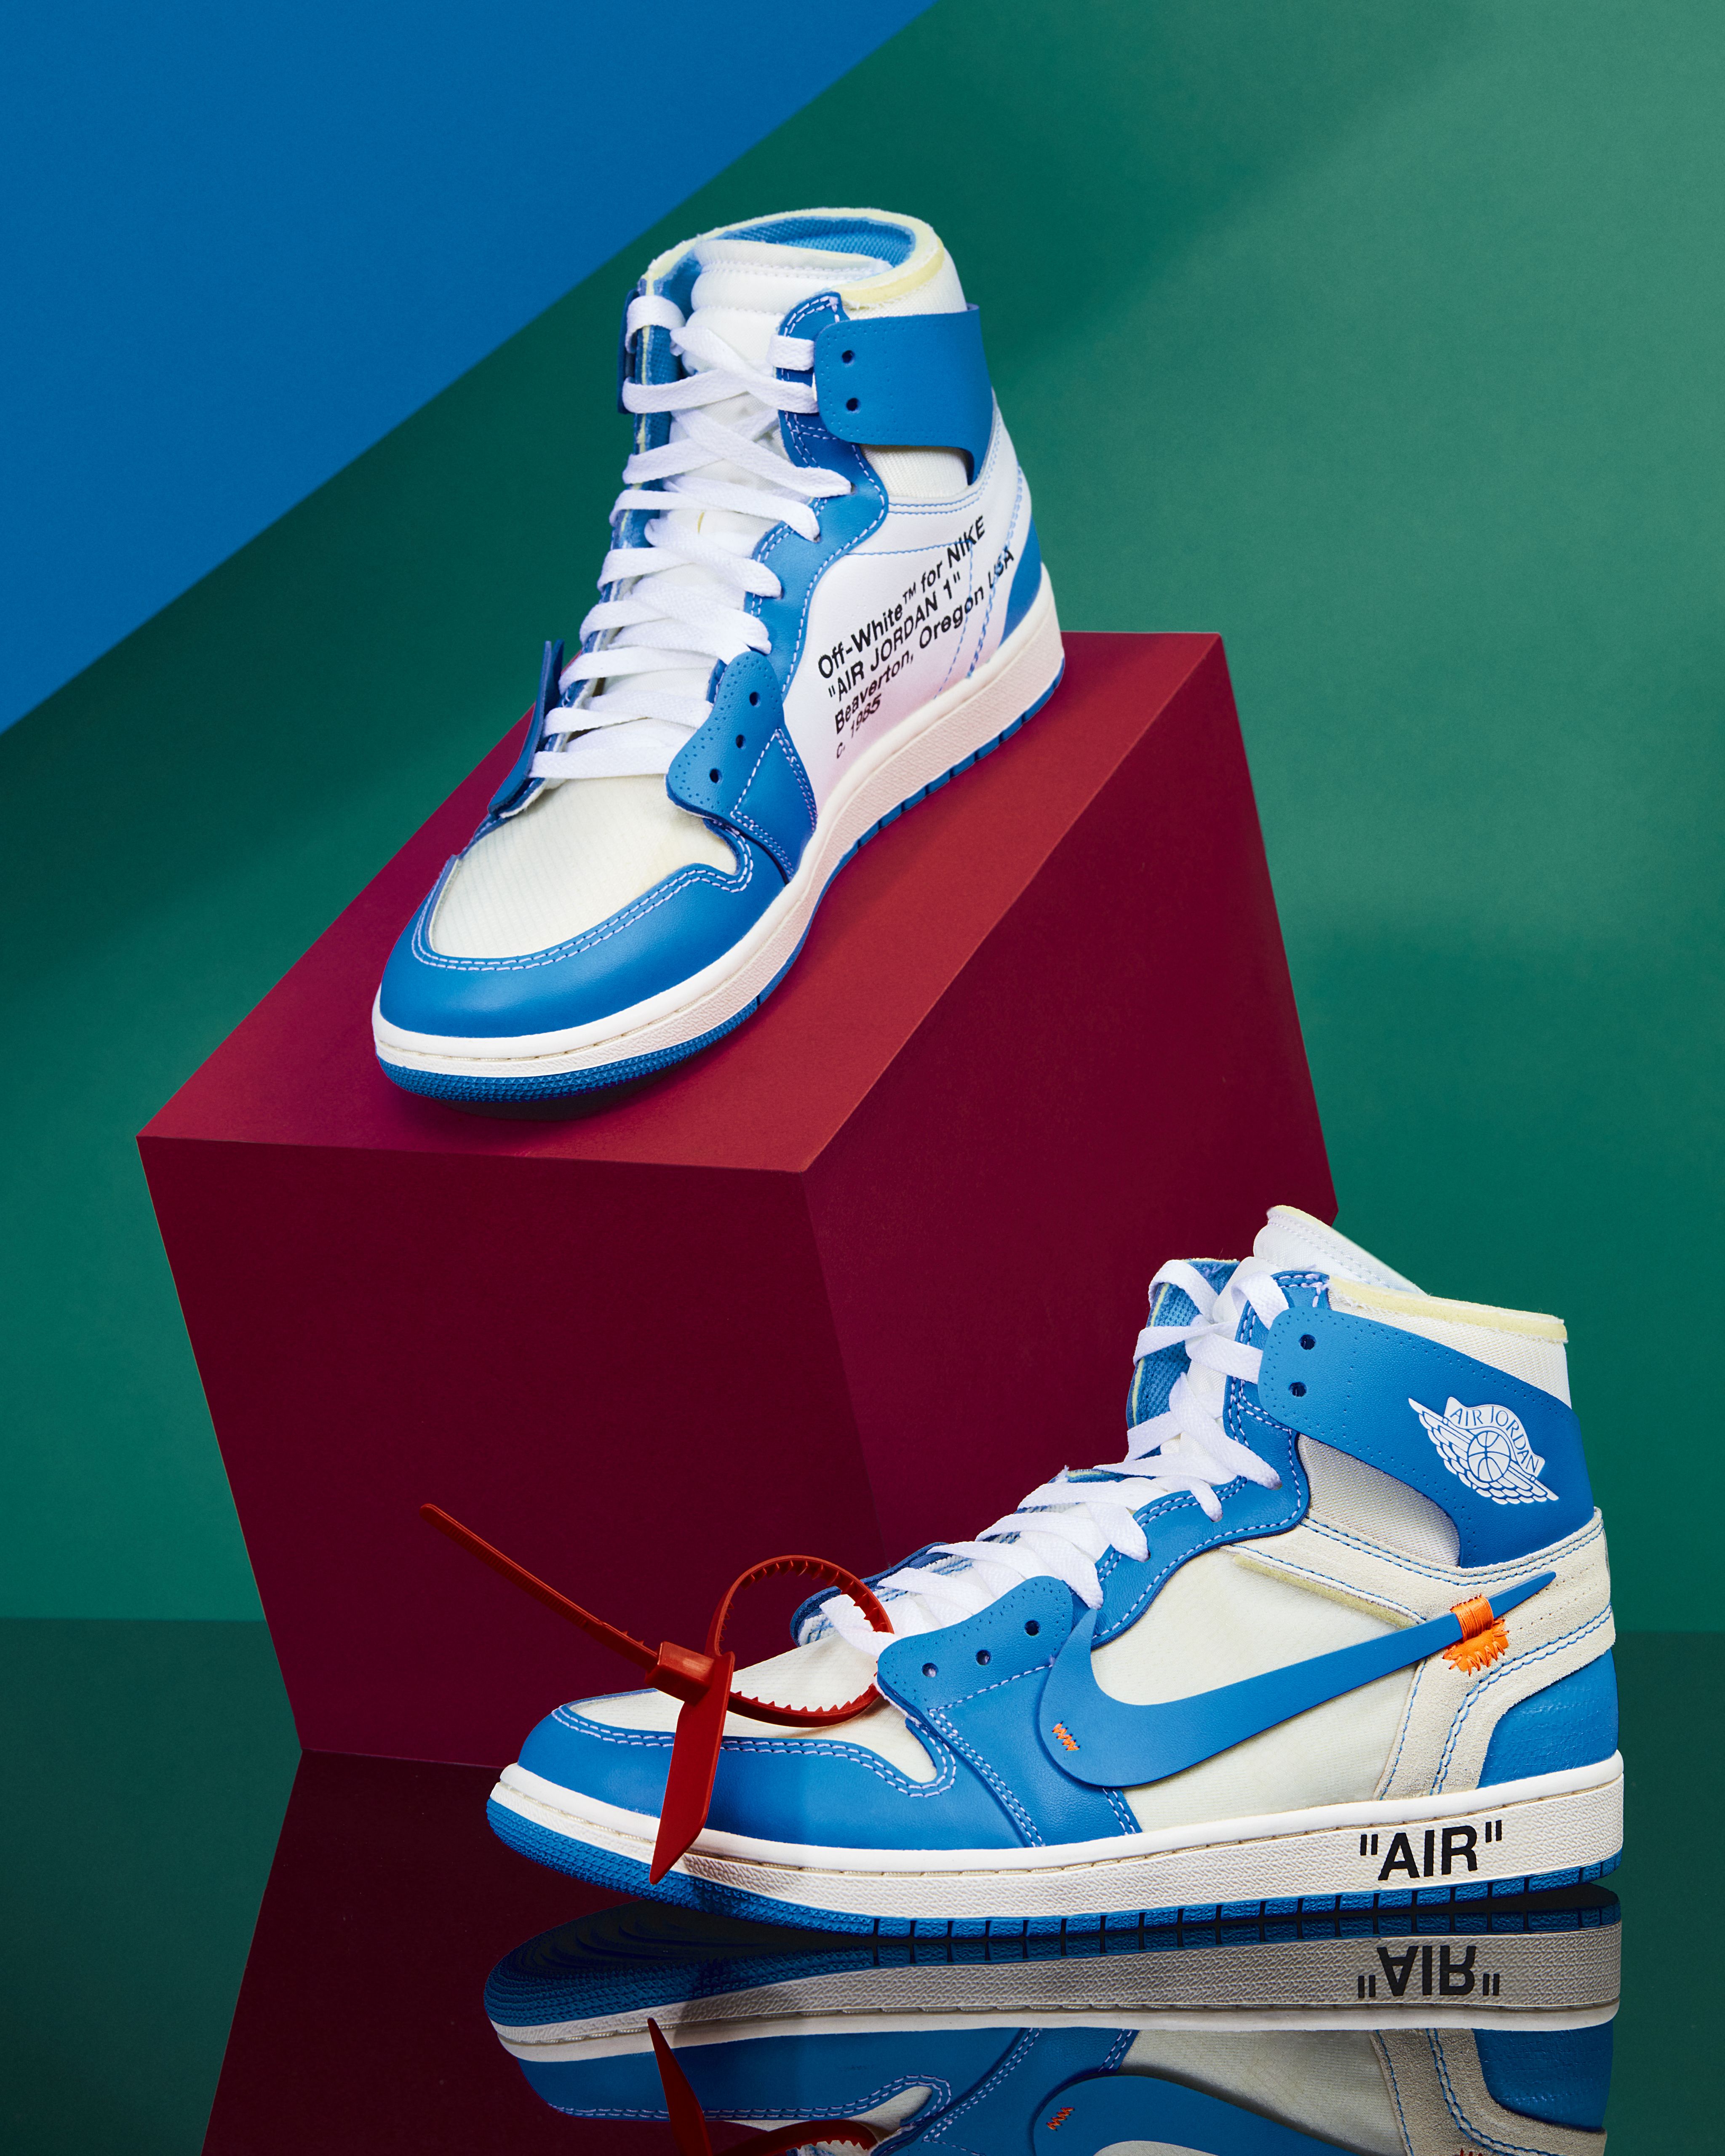 Retro-Futuristic Sneakers: Kanye Promotes 'Nike Air Yeezy